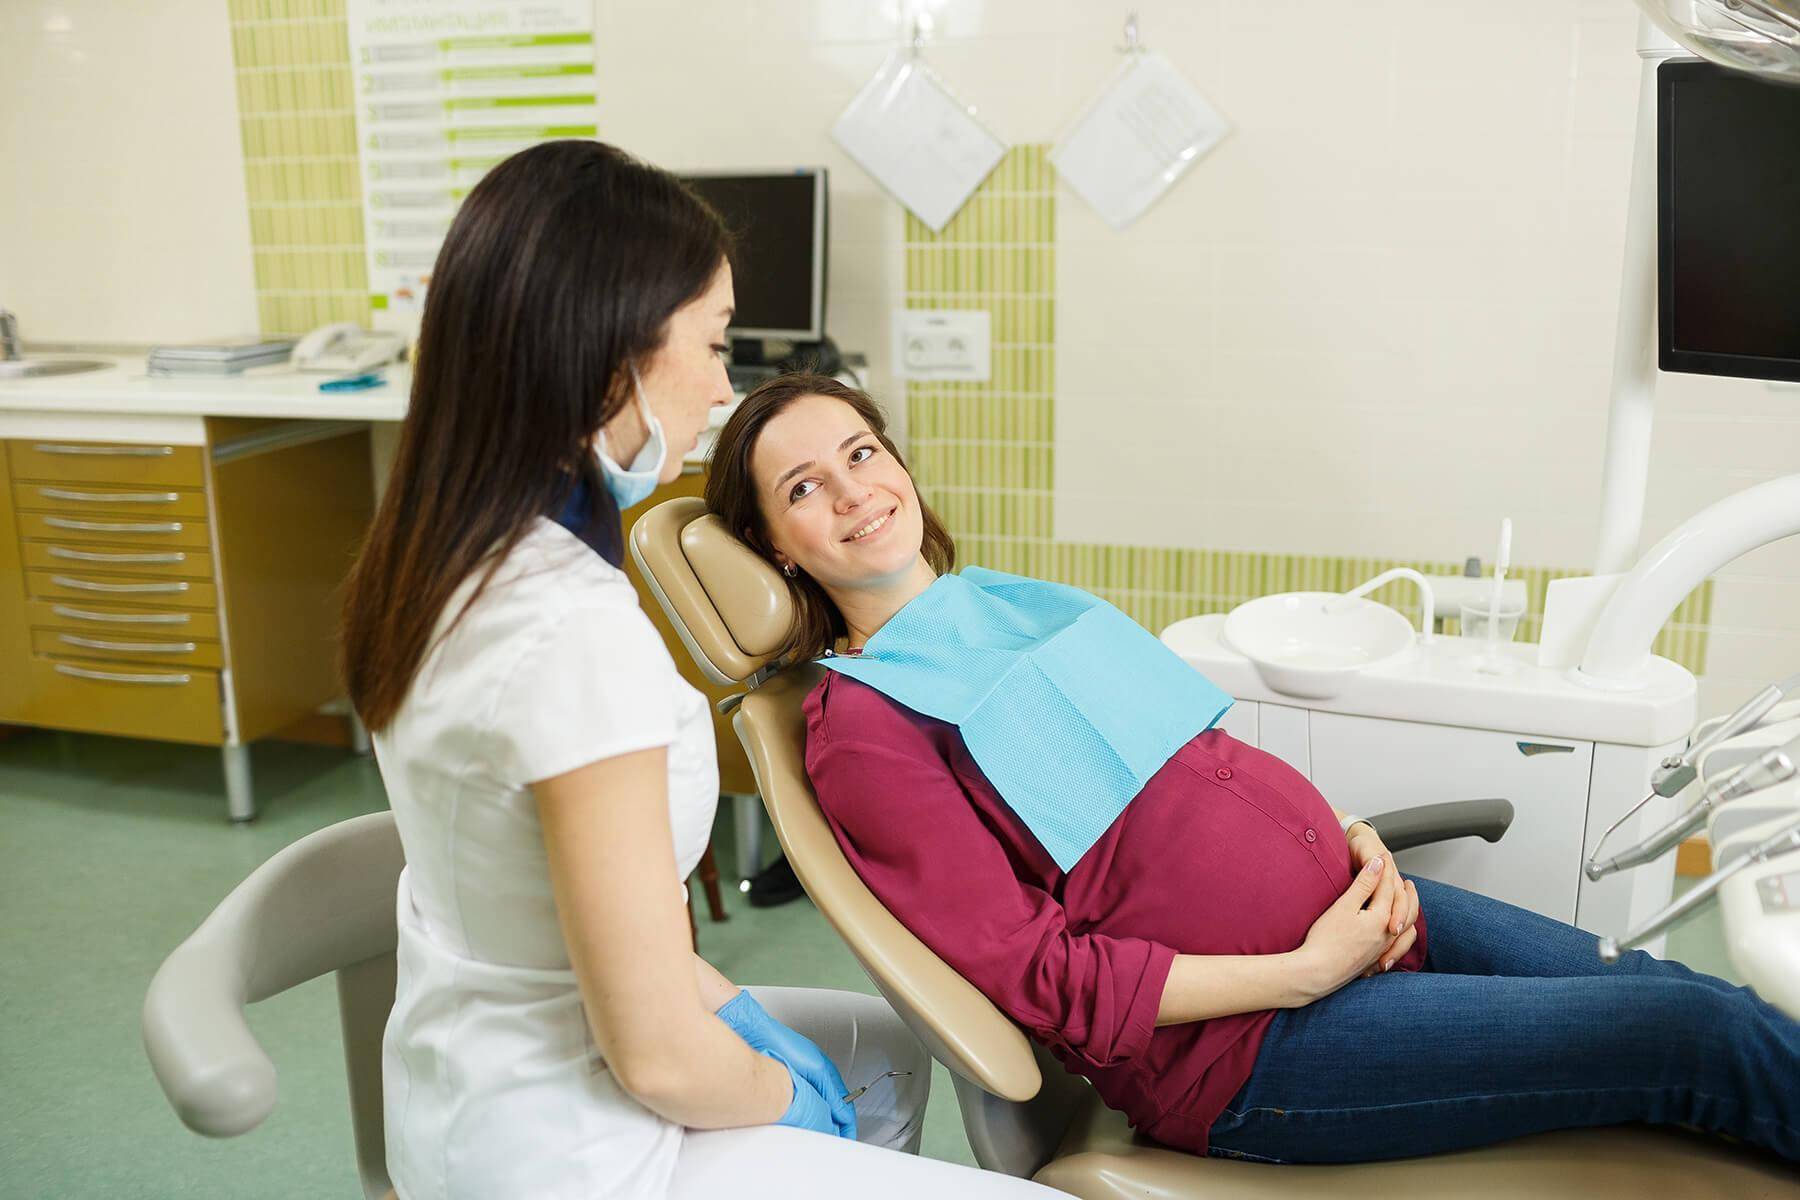 Можно ли беременным лечить зубы под наркозом и еще 5 вопросов. можно ли делать рентген и анестезию при лечении зубов во время беременности